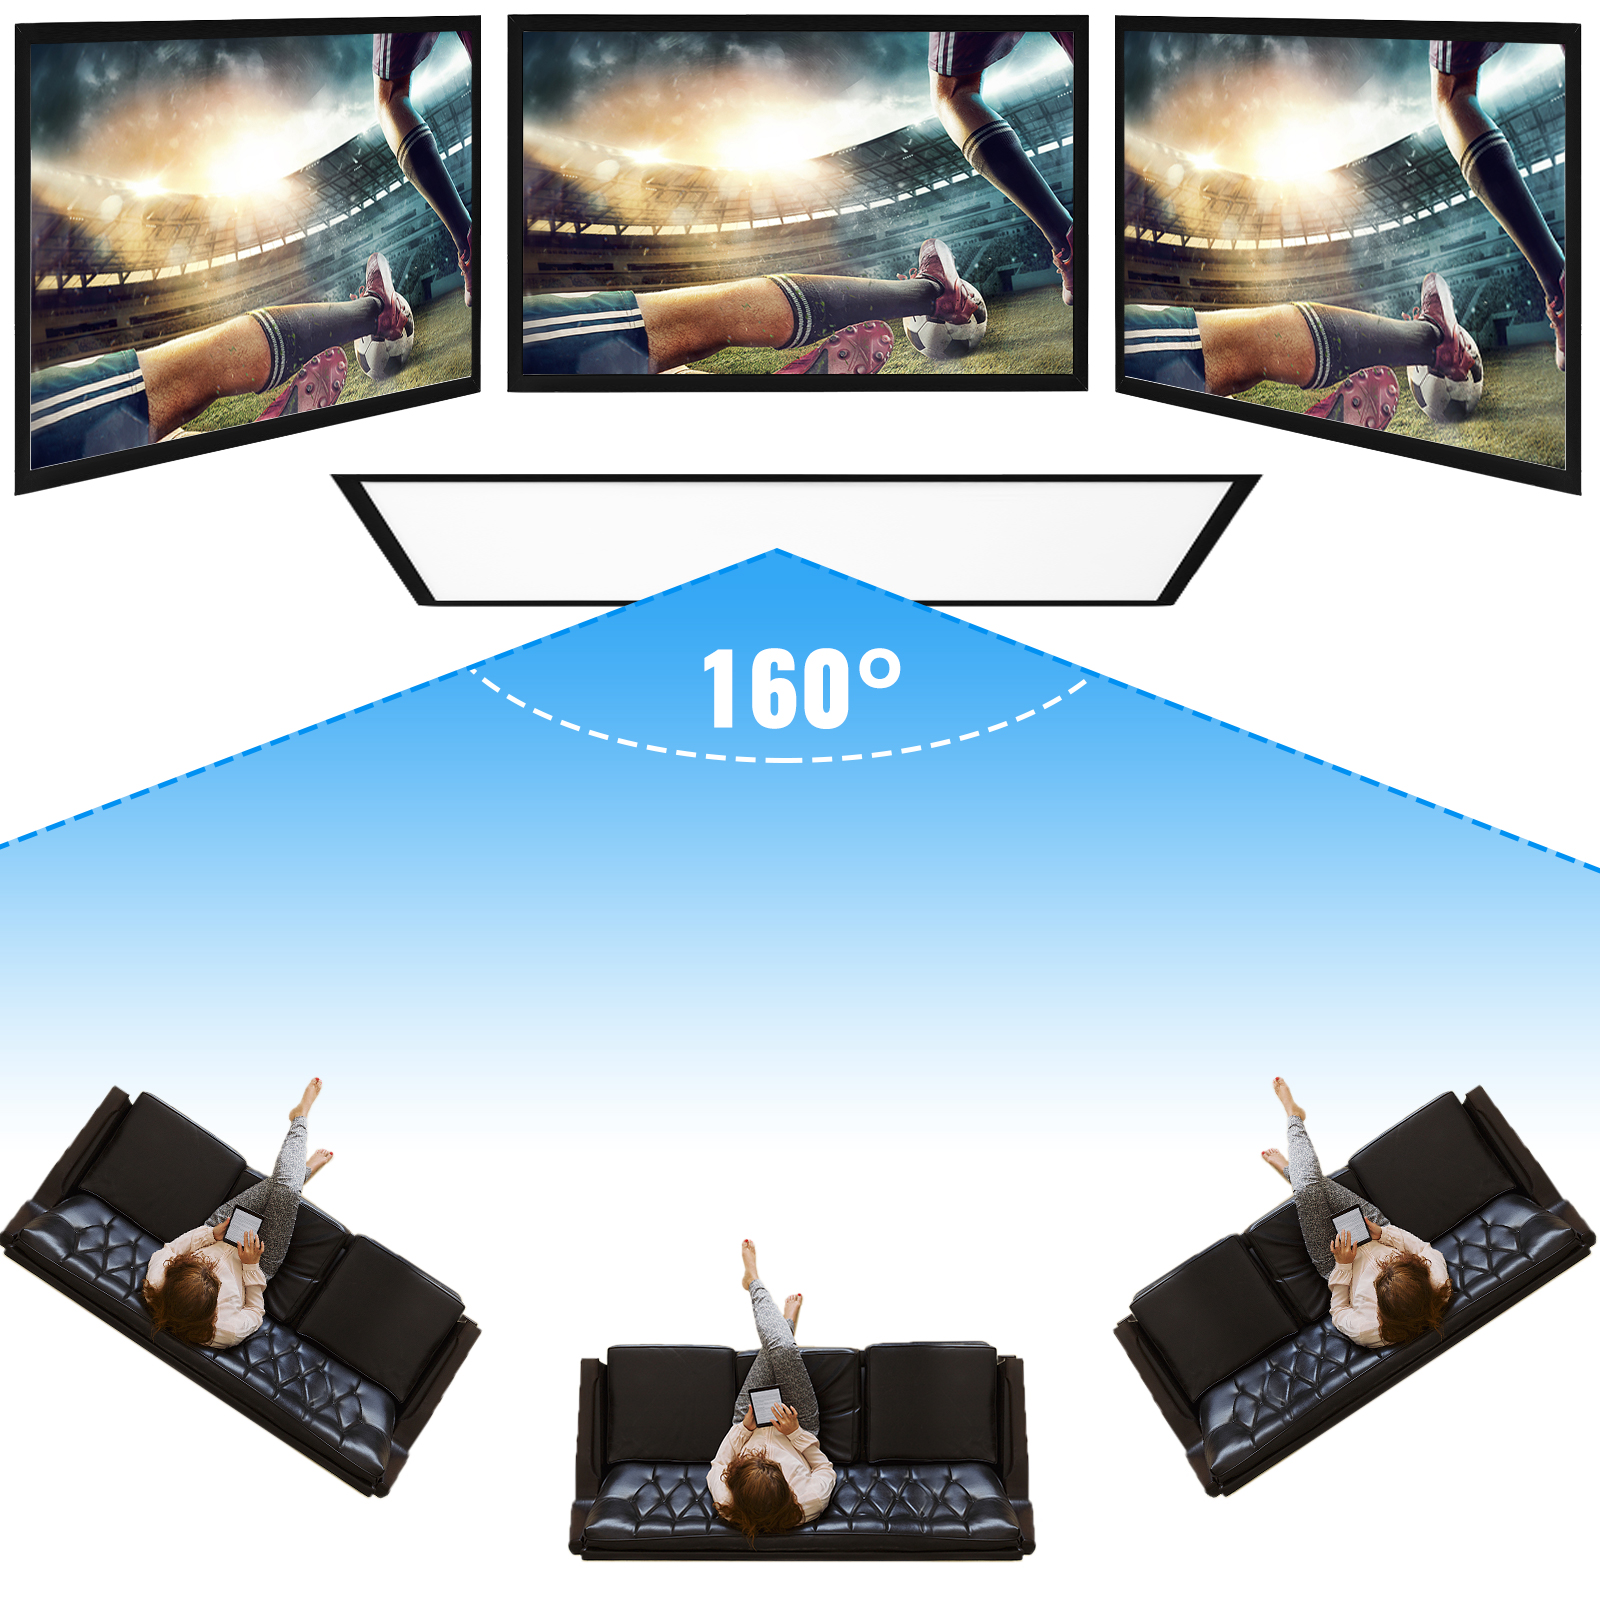 Променевий екран VEVOR 233 x 136 см, розмір діагоналі проекційного екрану 254 см, стельове кріплення екрану з ПВХ, проекційний екран з роздільною здатністю екрану 16 : 9, для заходів на відкритому повітрі